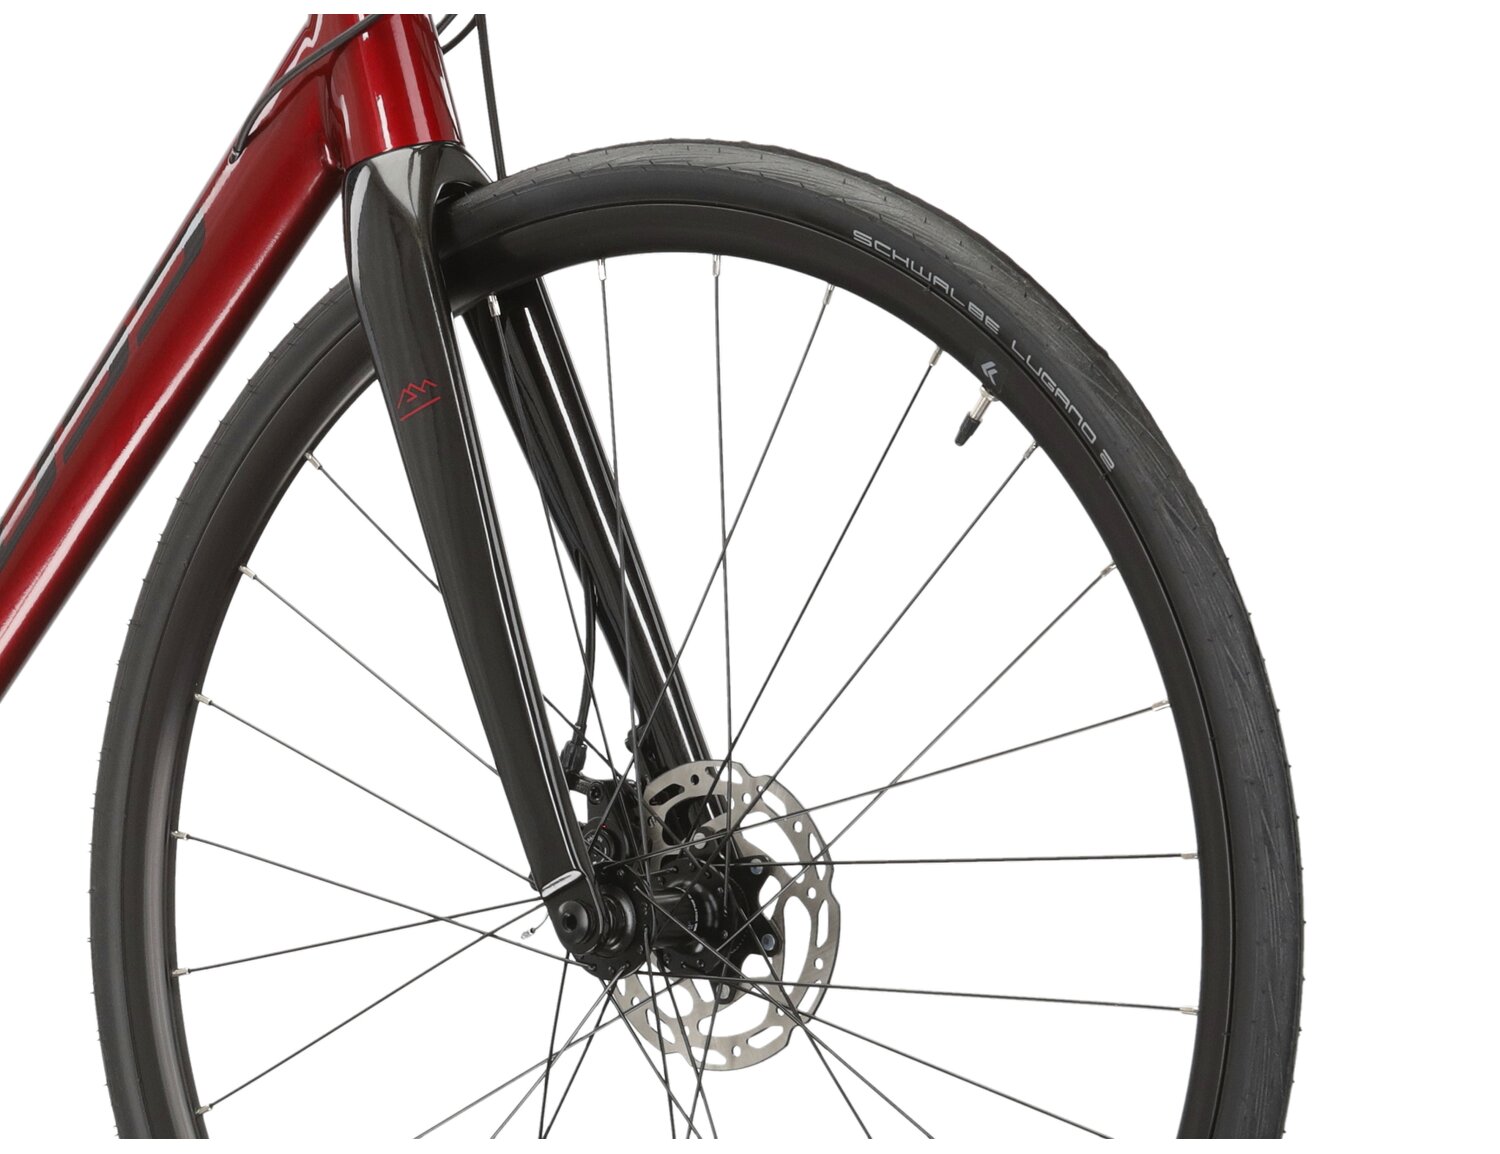  Aluminiowa rama, sztywny carbonowy widelec oraz opony Schwalbe w rowerze szosowym KROSS Vento DSC 4.0 KRX 